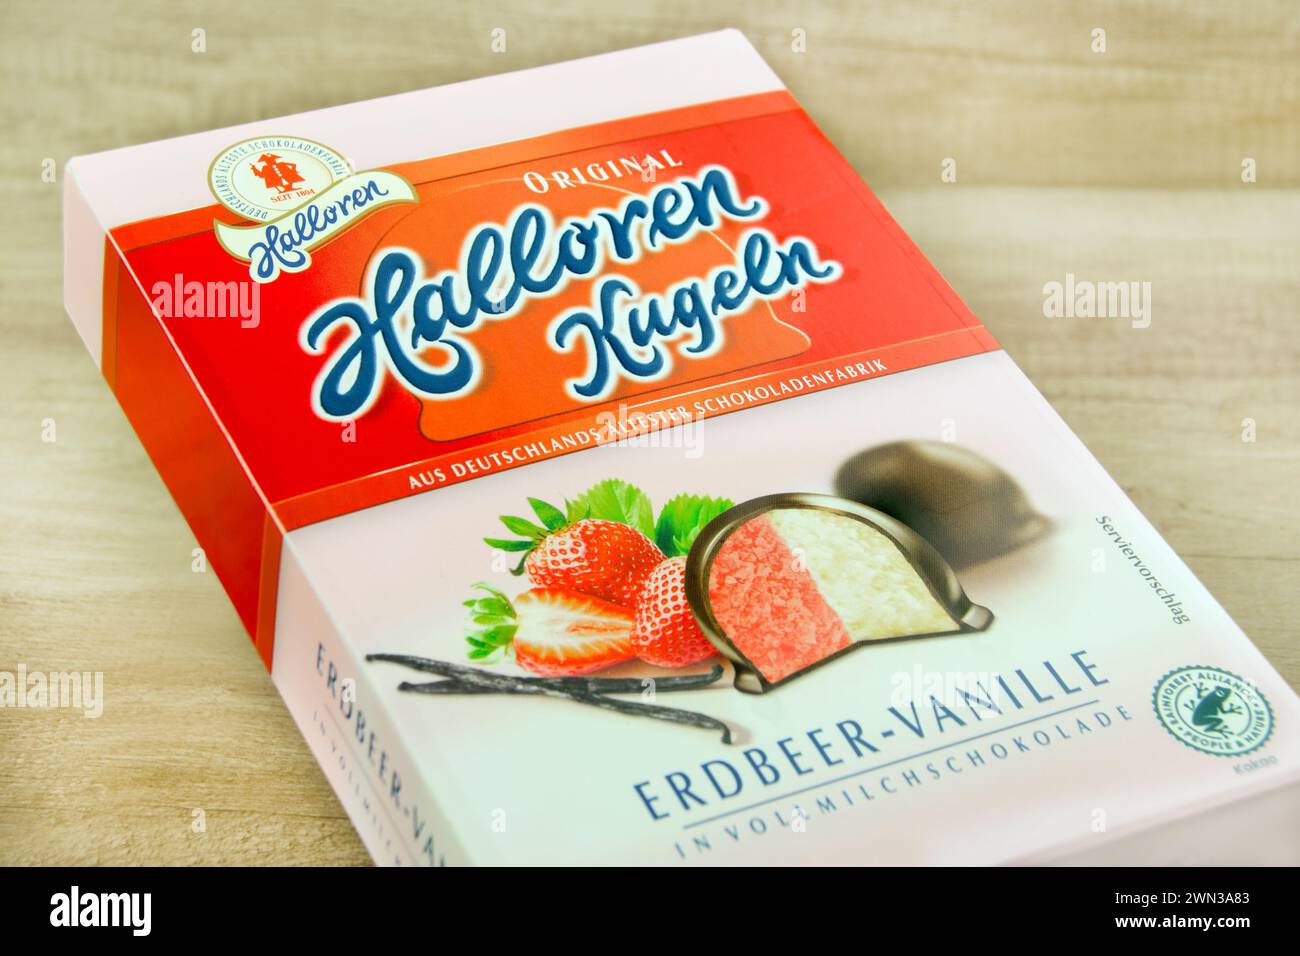 Halloren Kugeln Schokolade Erdbeer-Vanille Original Foto Stock